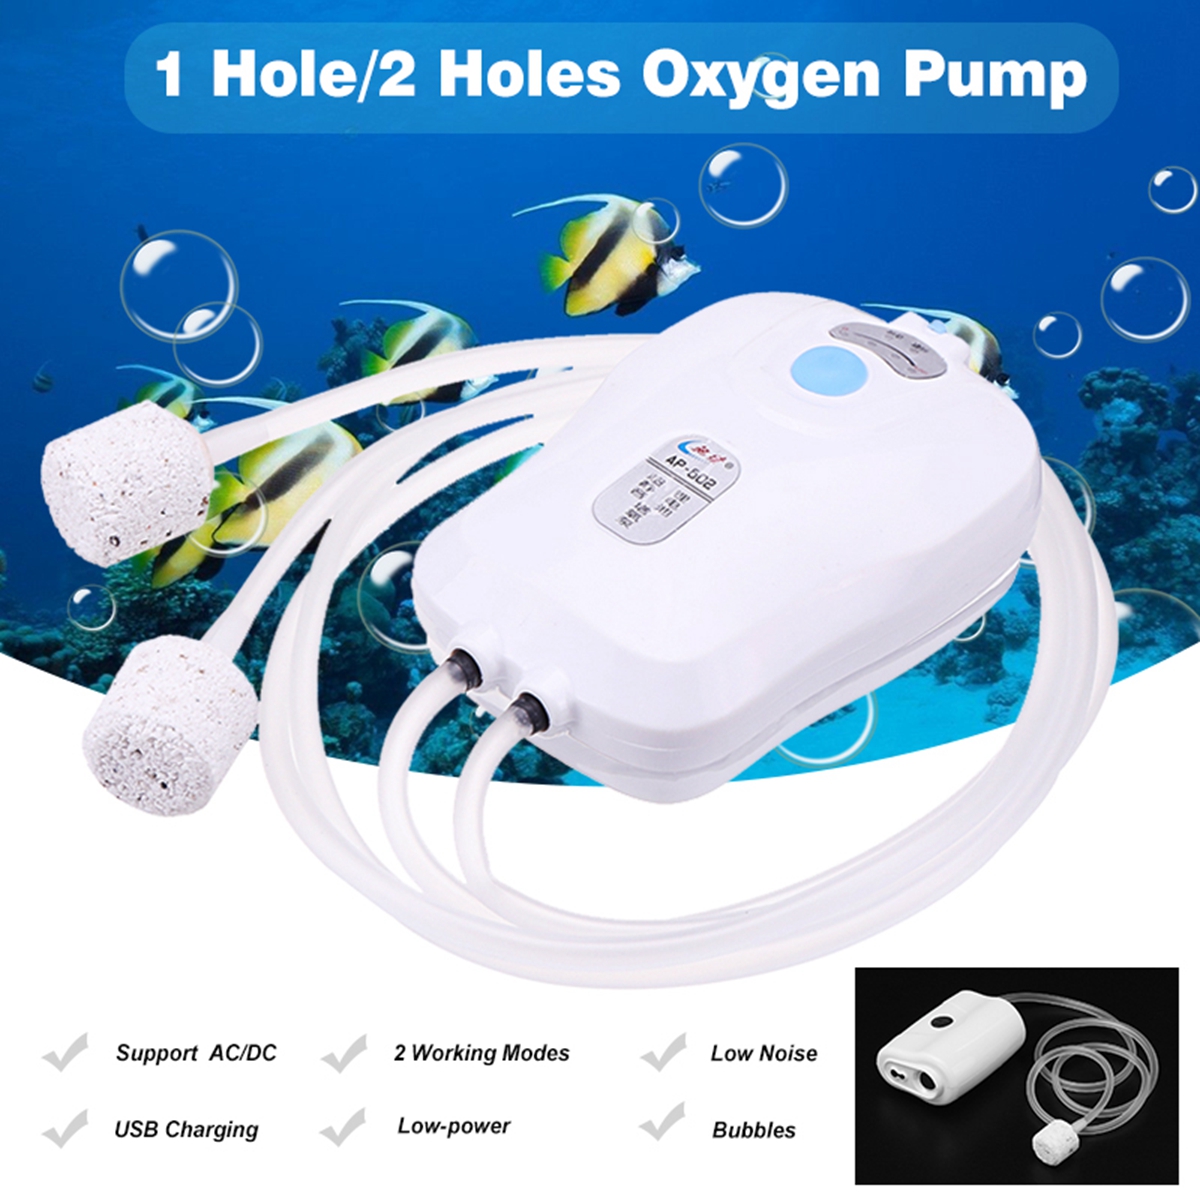 SUNSUN-Aquarium-Pump-Portable-USB-Charging-1-Hole2-Holes-Oxygen-Pump-Fish-Tank-Aerator-Compressor-1388945-1